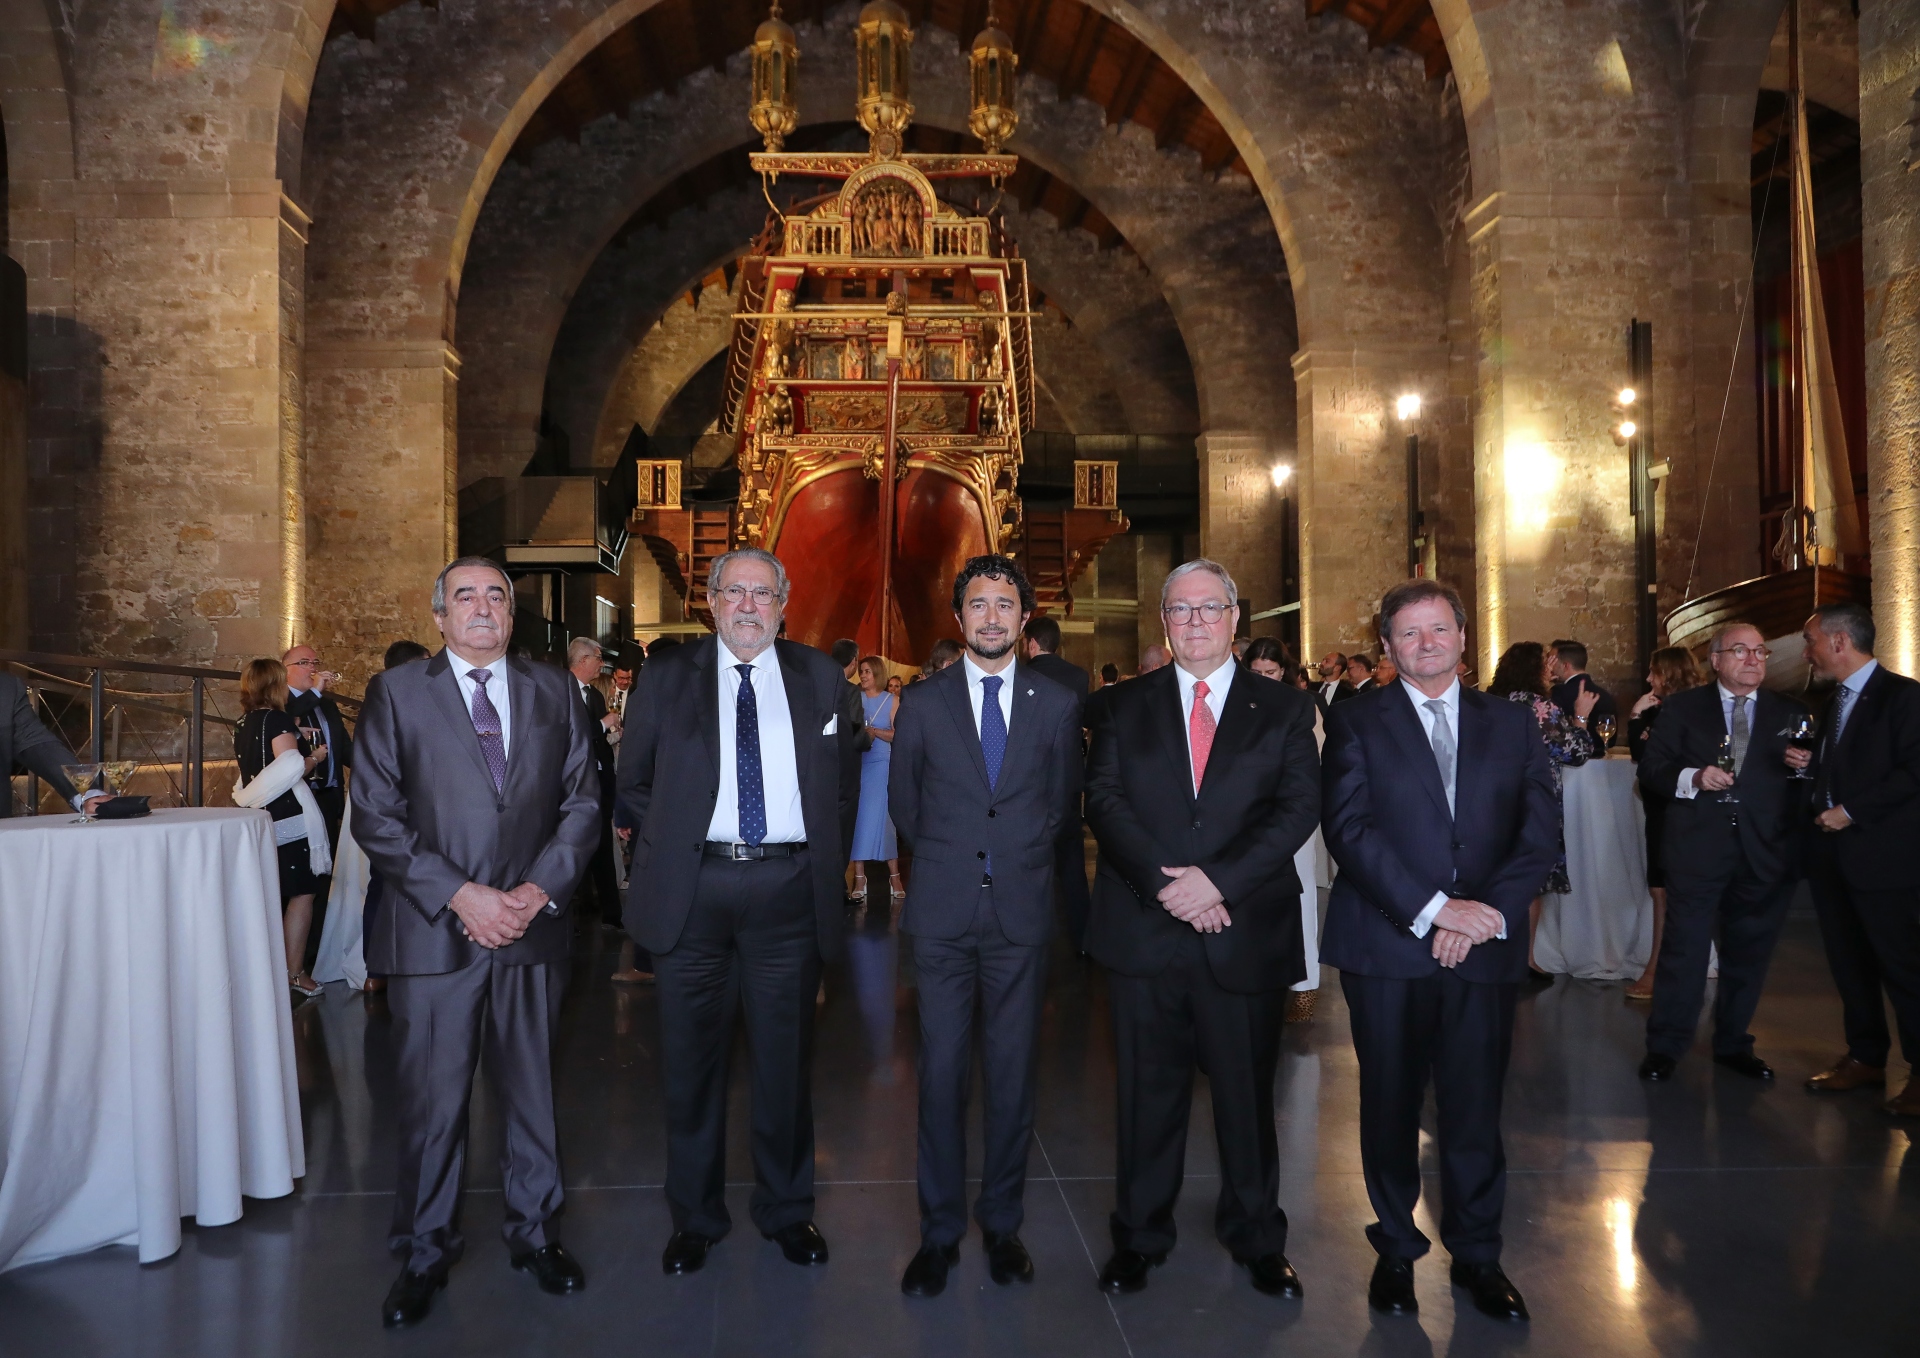 Los Agentes Consignatarios de Buques de Barcelona conmemoran el centenario de su asociación